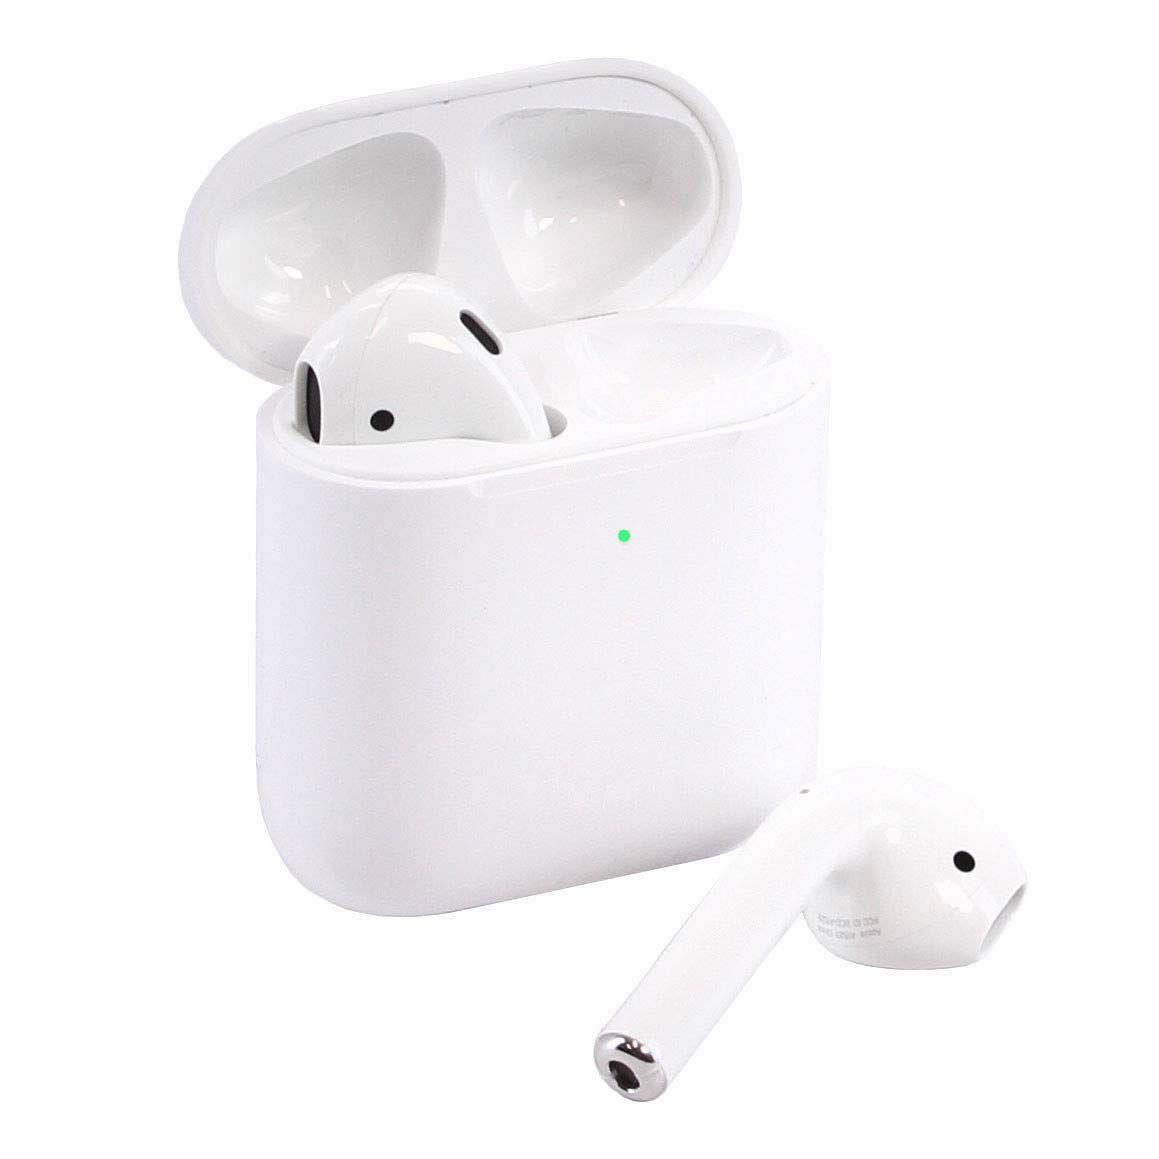 Bezdrátová sluchátka Bluetooth iPhone s indukčním nabíjením